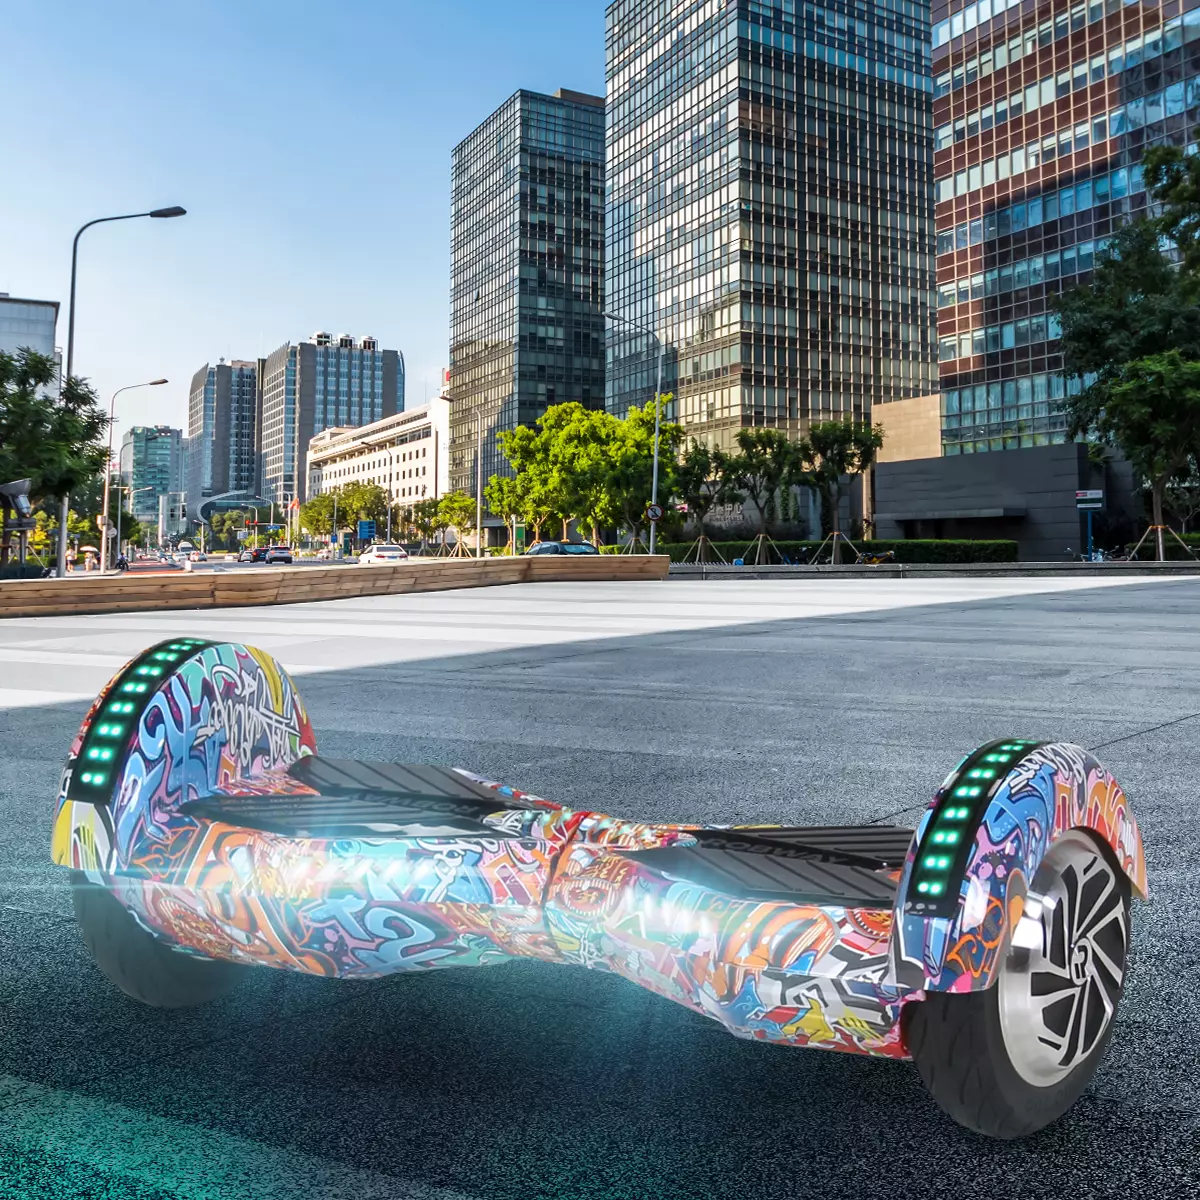 Leuchtendes Robway W2 Hoverboard auf Straßenasphalt, dahinter Hochhäuser der Stadt